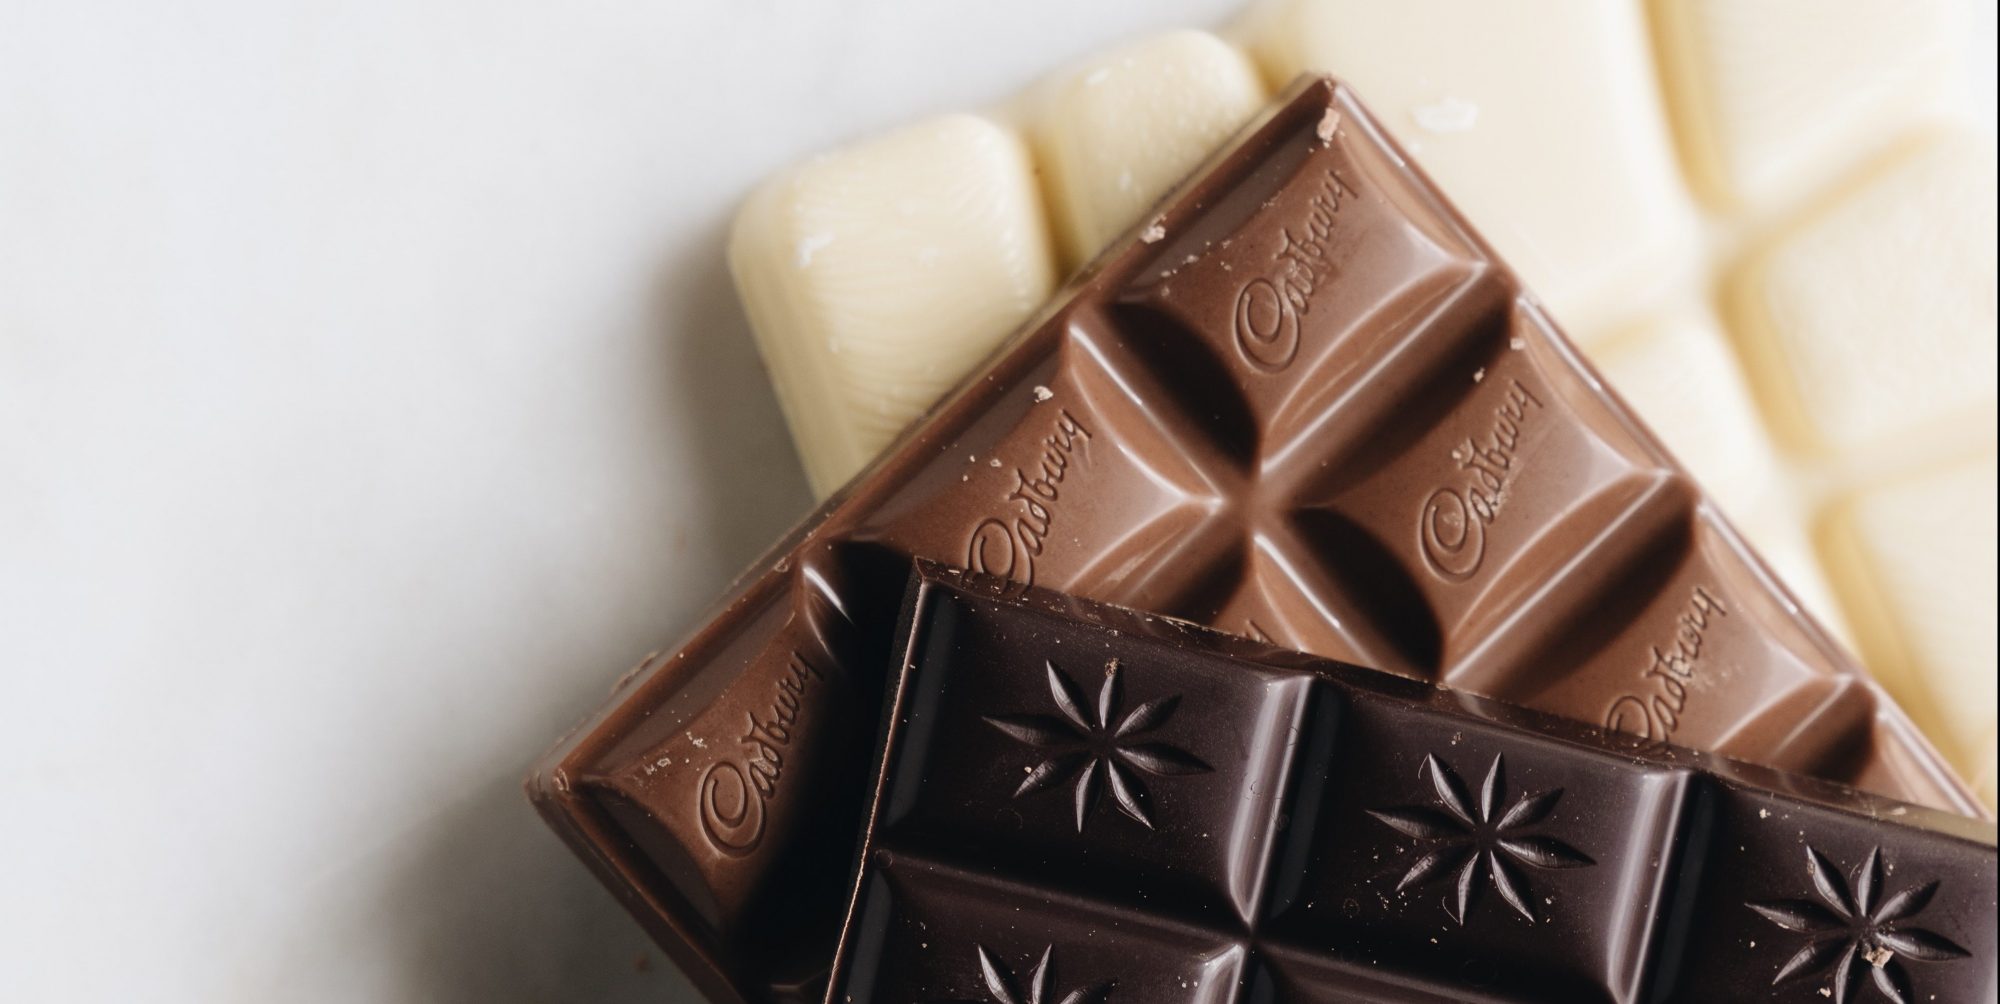 Αυτή η σοκολάτα έχει τις λιγότερες θερμίδες. Και δεν αναφερόμαστε στην bitter Και όμως μπορείς να φας περισσότερες σοκολάτες από ότι περίμενες!